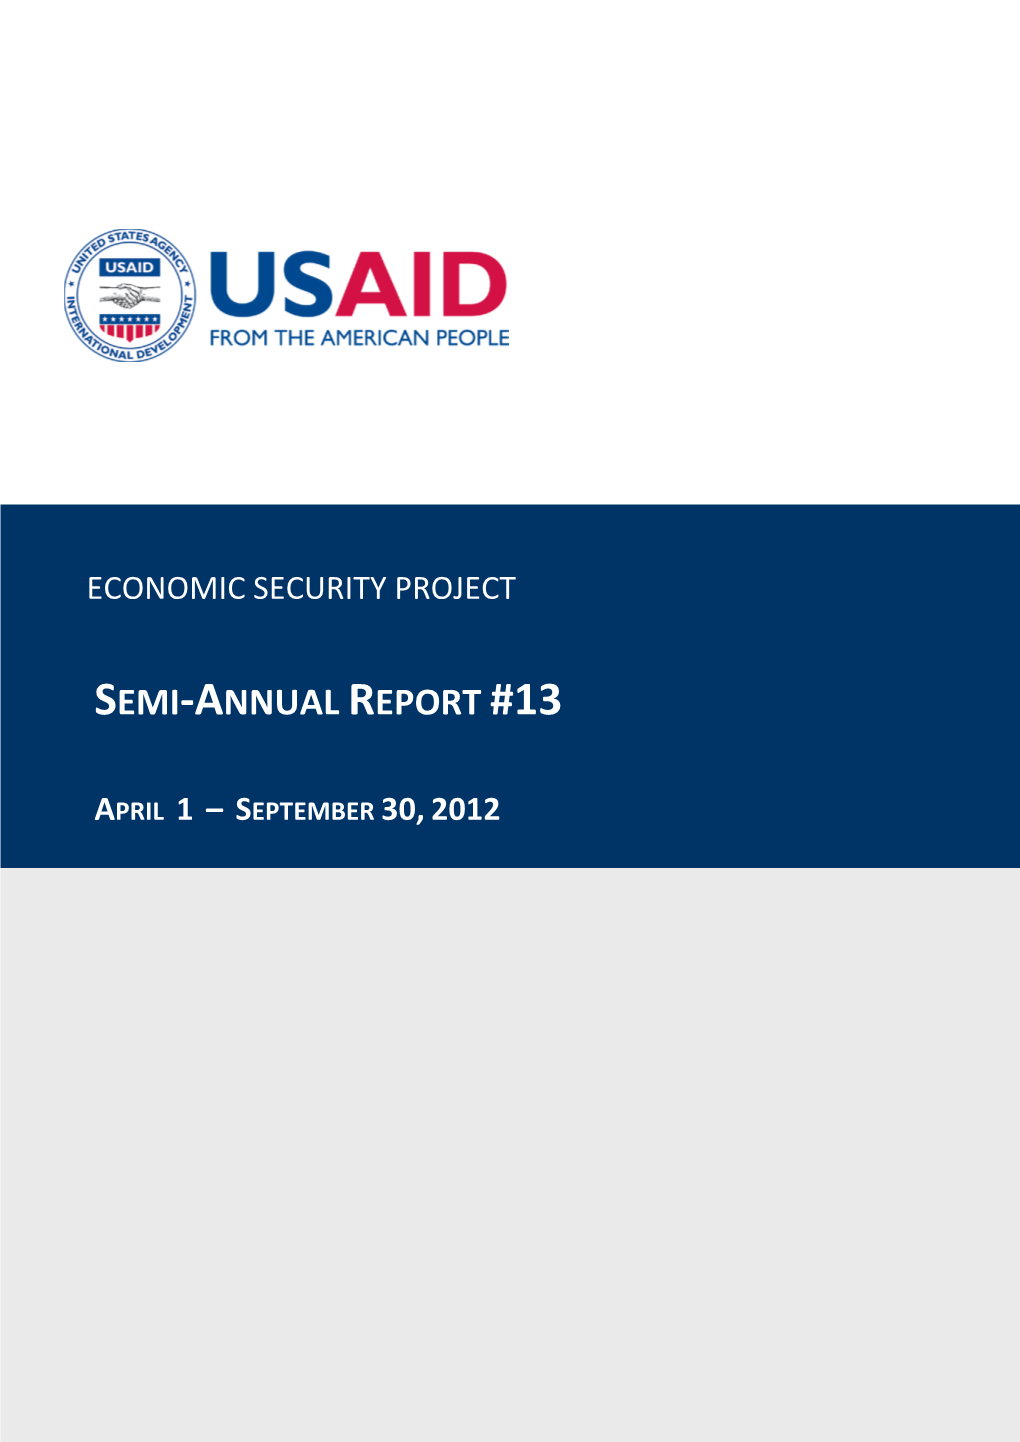 Semi-Annual Report #13